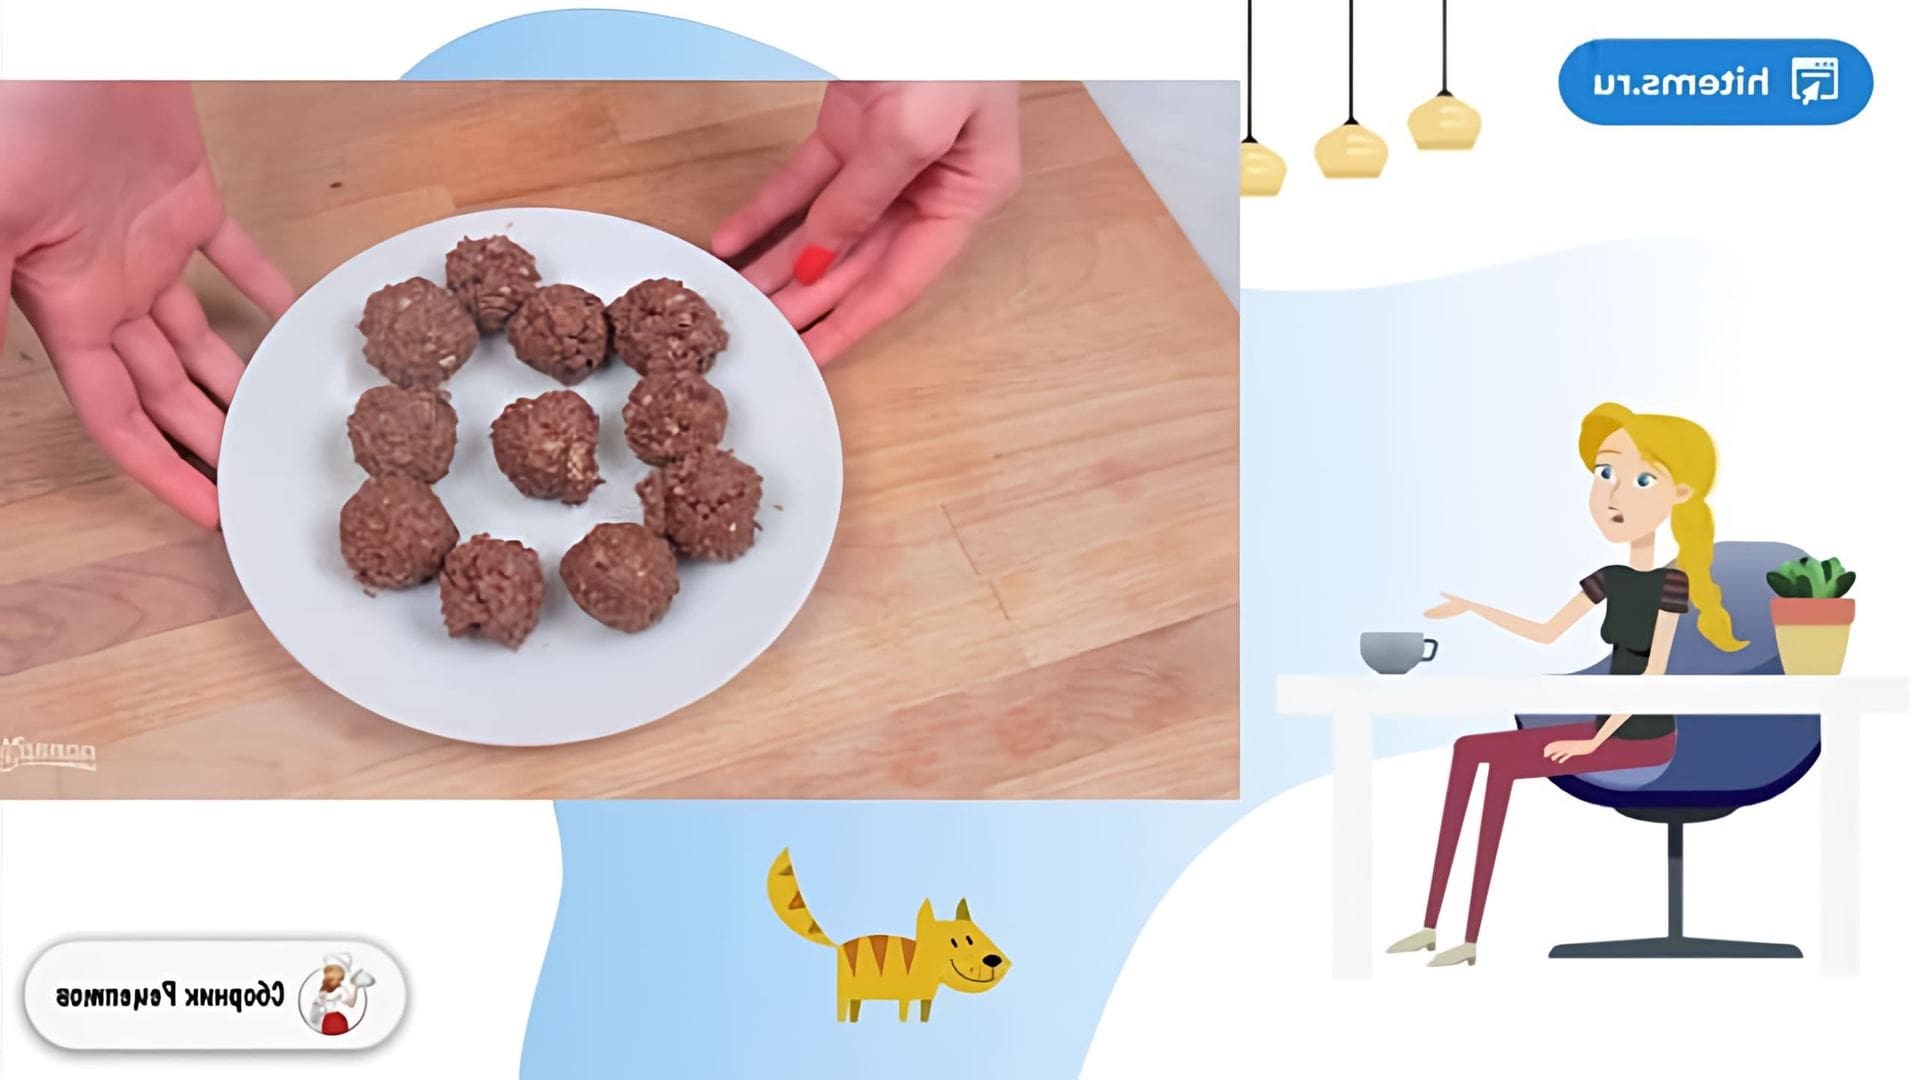 В этом видео демонстрируется рецепт приготовления конфет, похожих на знаменитые конфеты Ферреро Роше